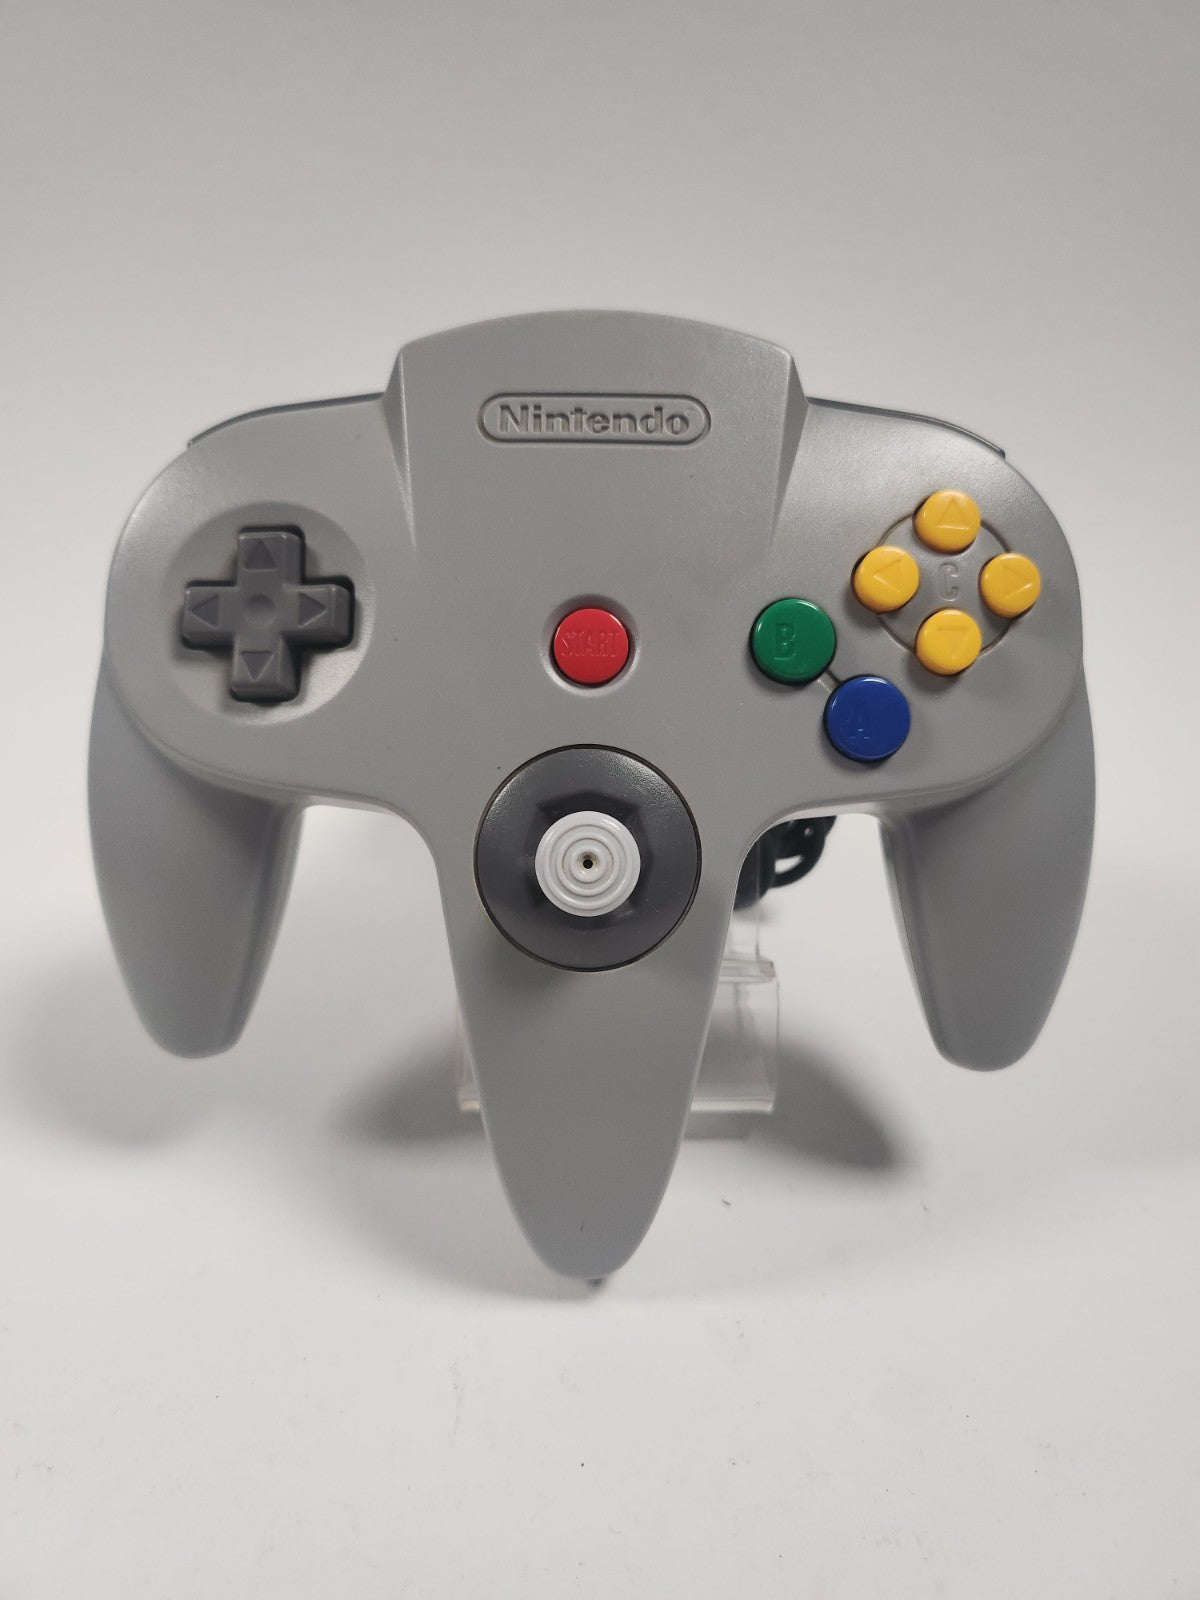 Nintendo 64 mit 1 Controller und Adapter